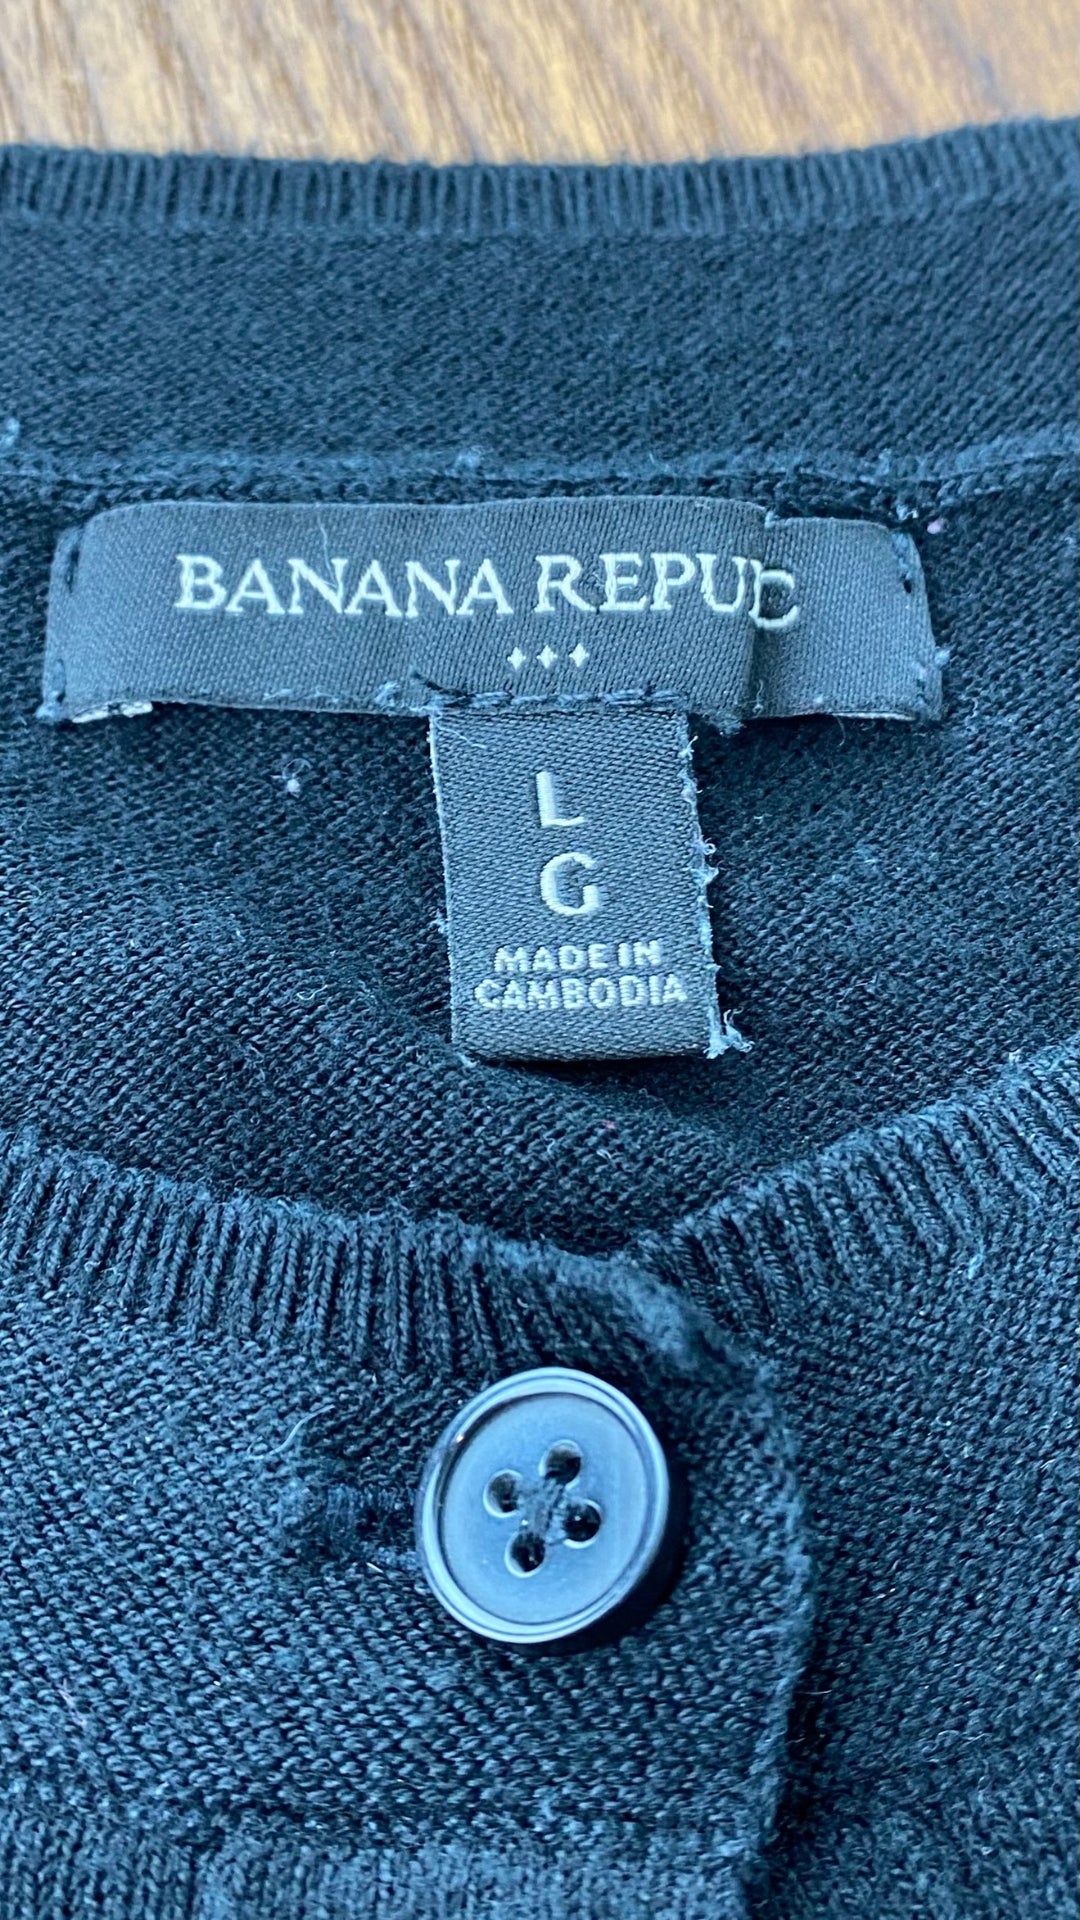 Cardigan boutonné noir en tricot mince à col rond Banana Republic, taille large. Vue de l'étiquette de marque et composition.